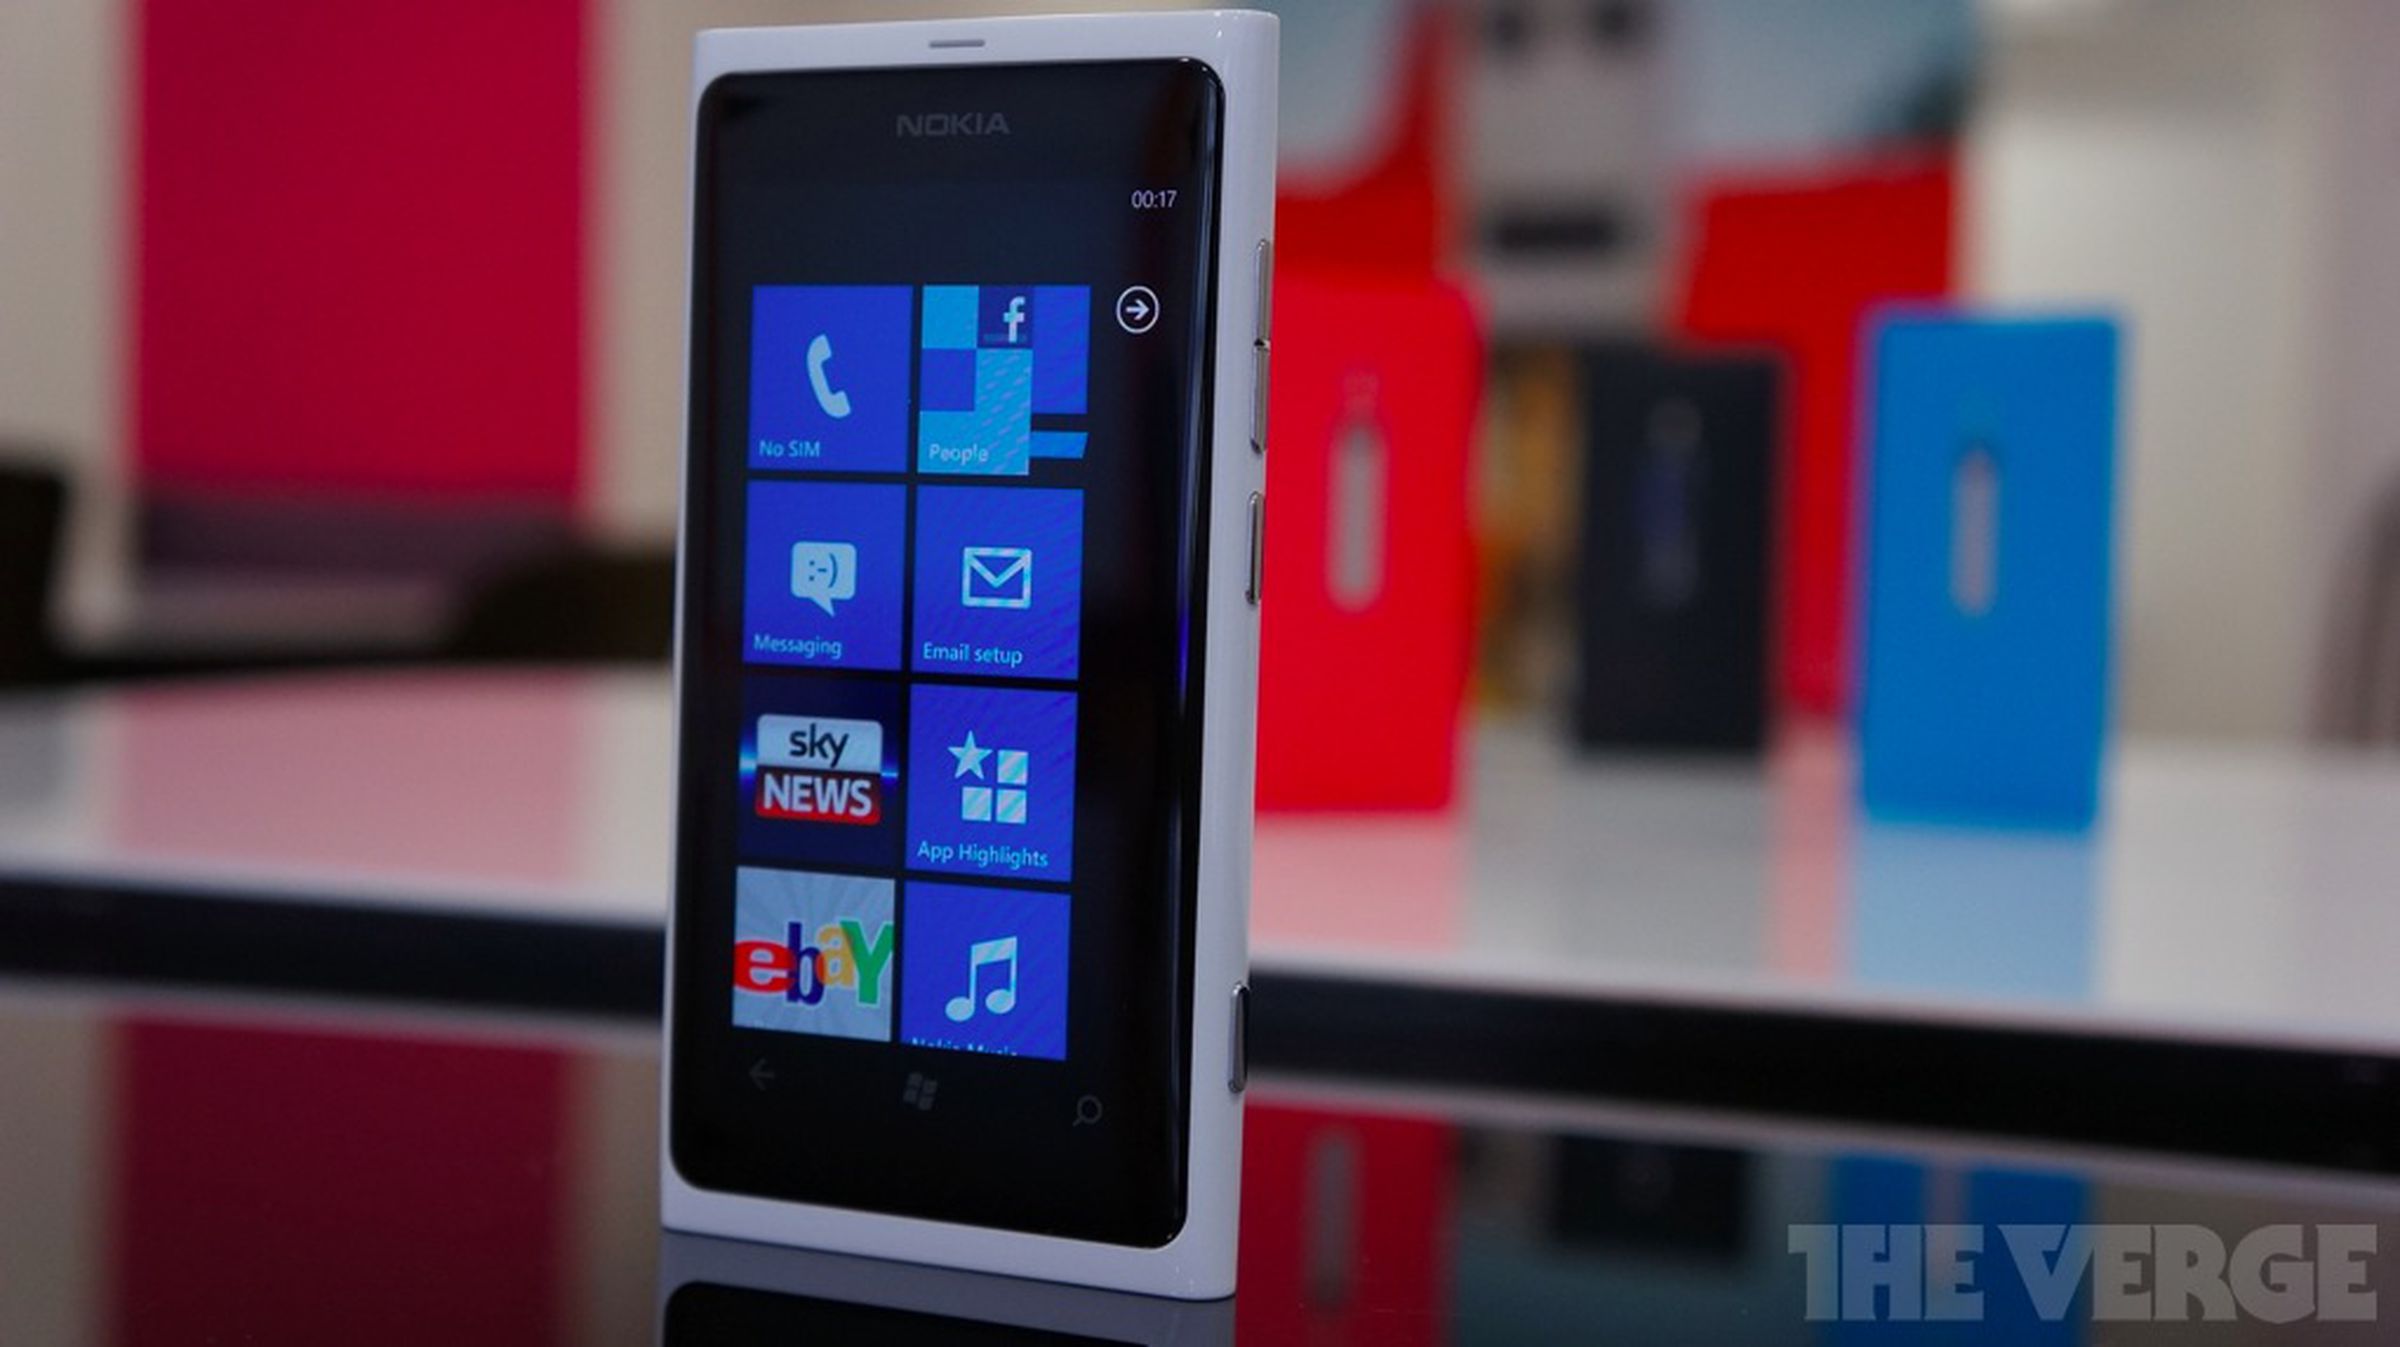 White Lumia 800 hands-on photos